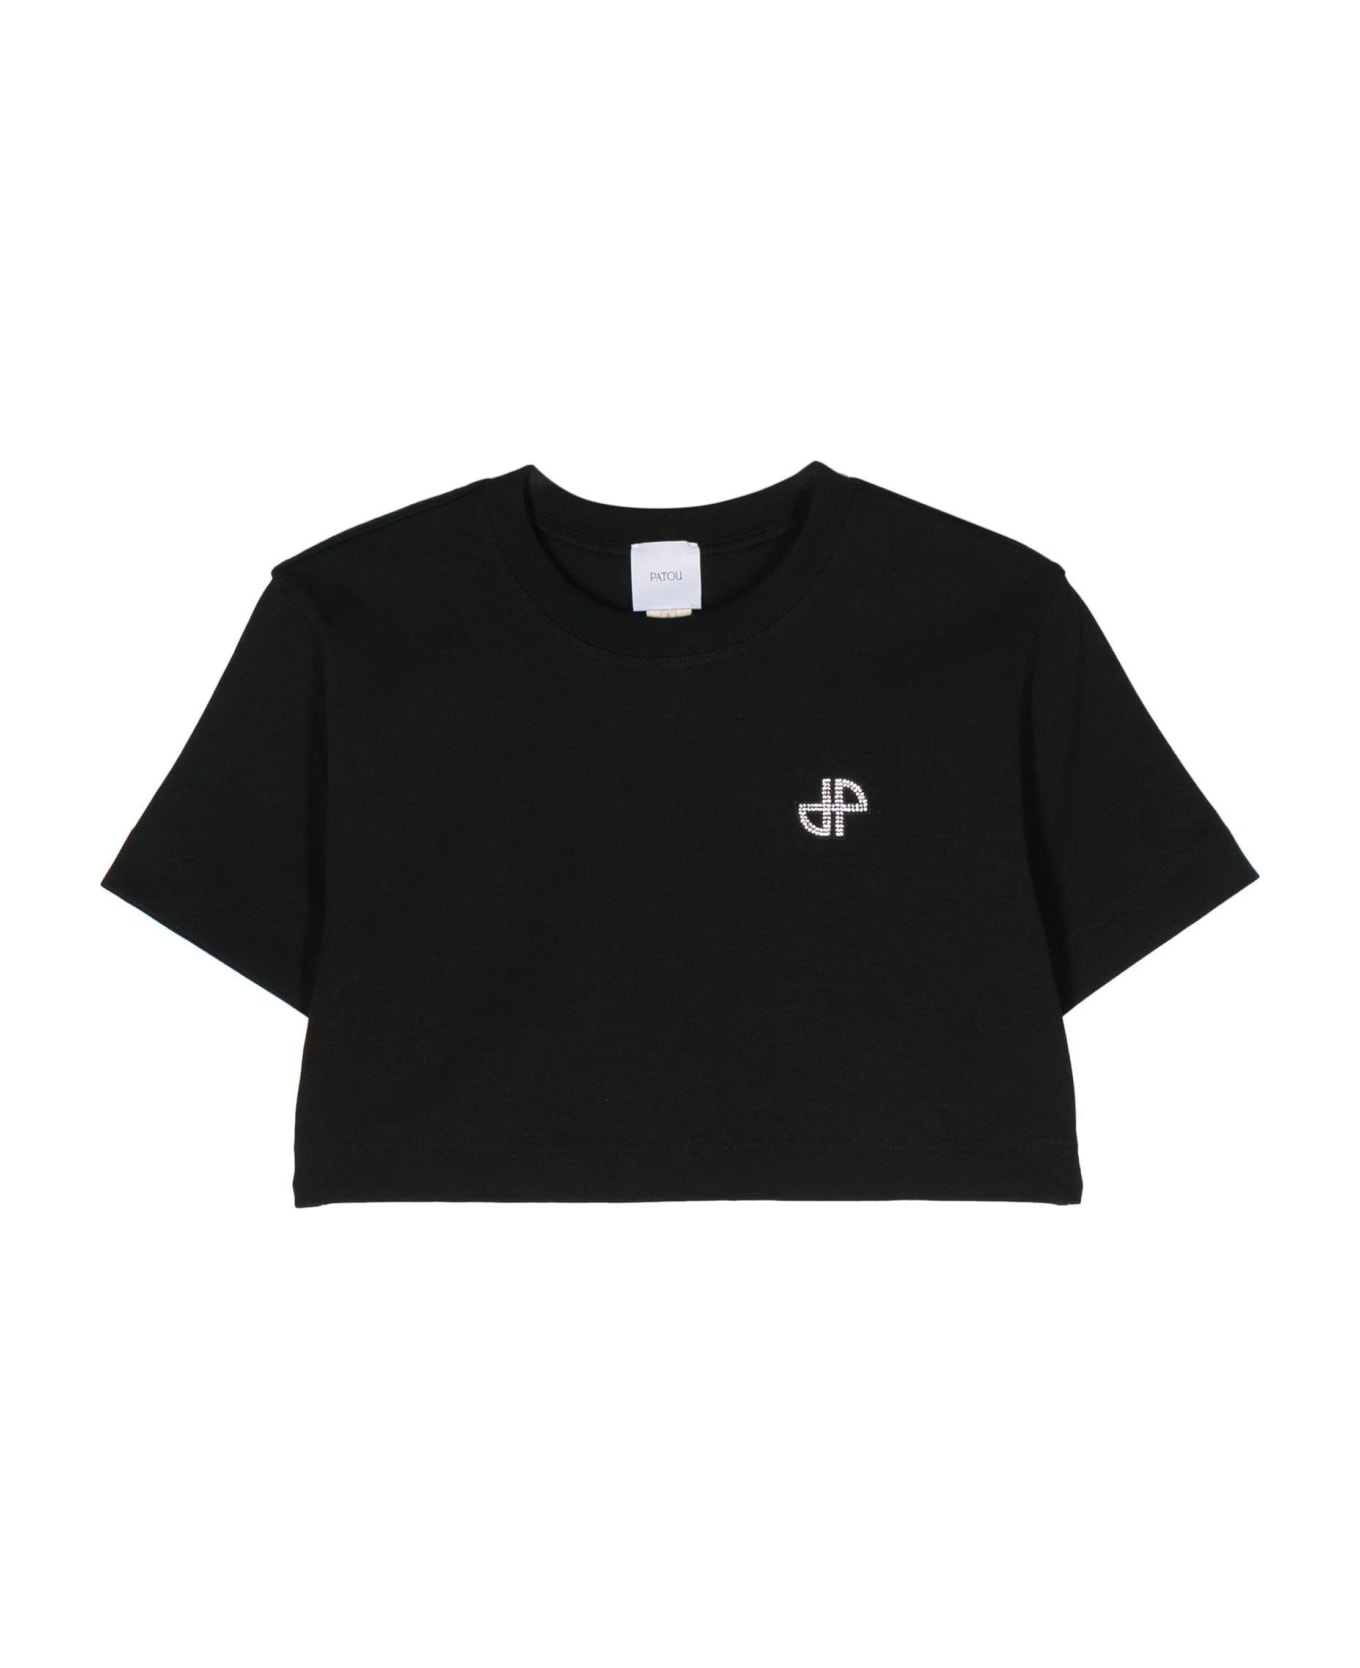 Patou Black Organic Cotton T-shirt - Black